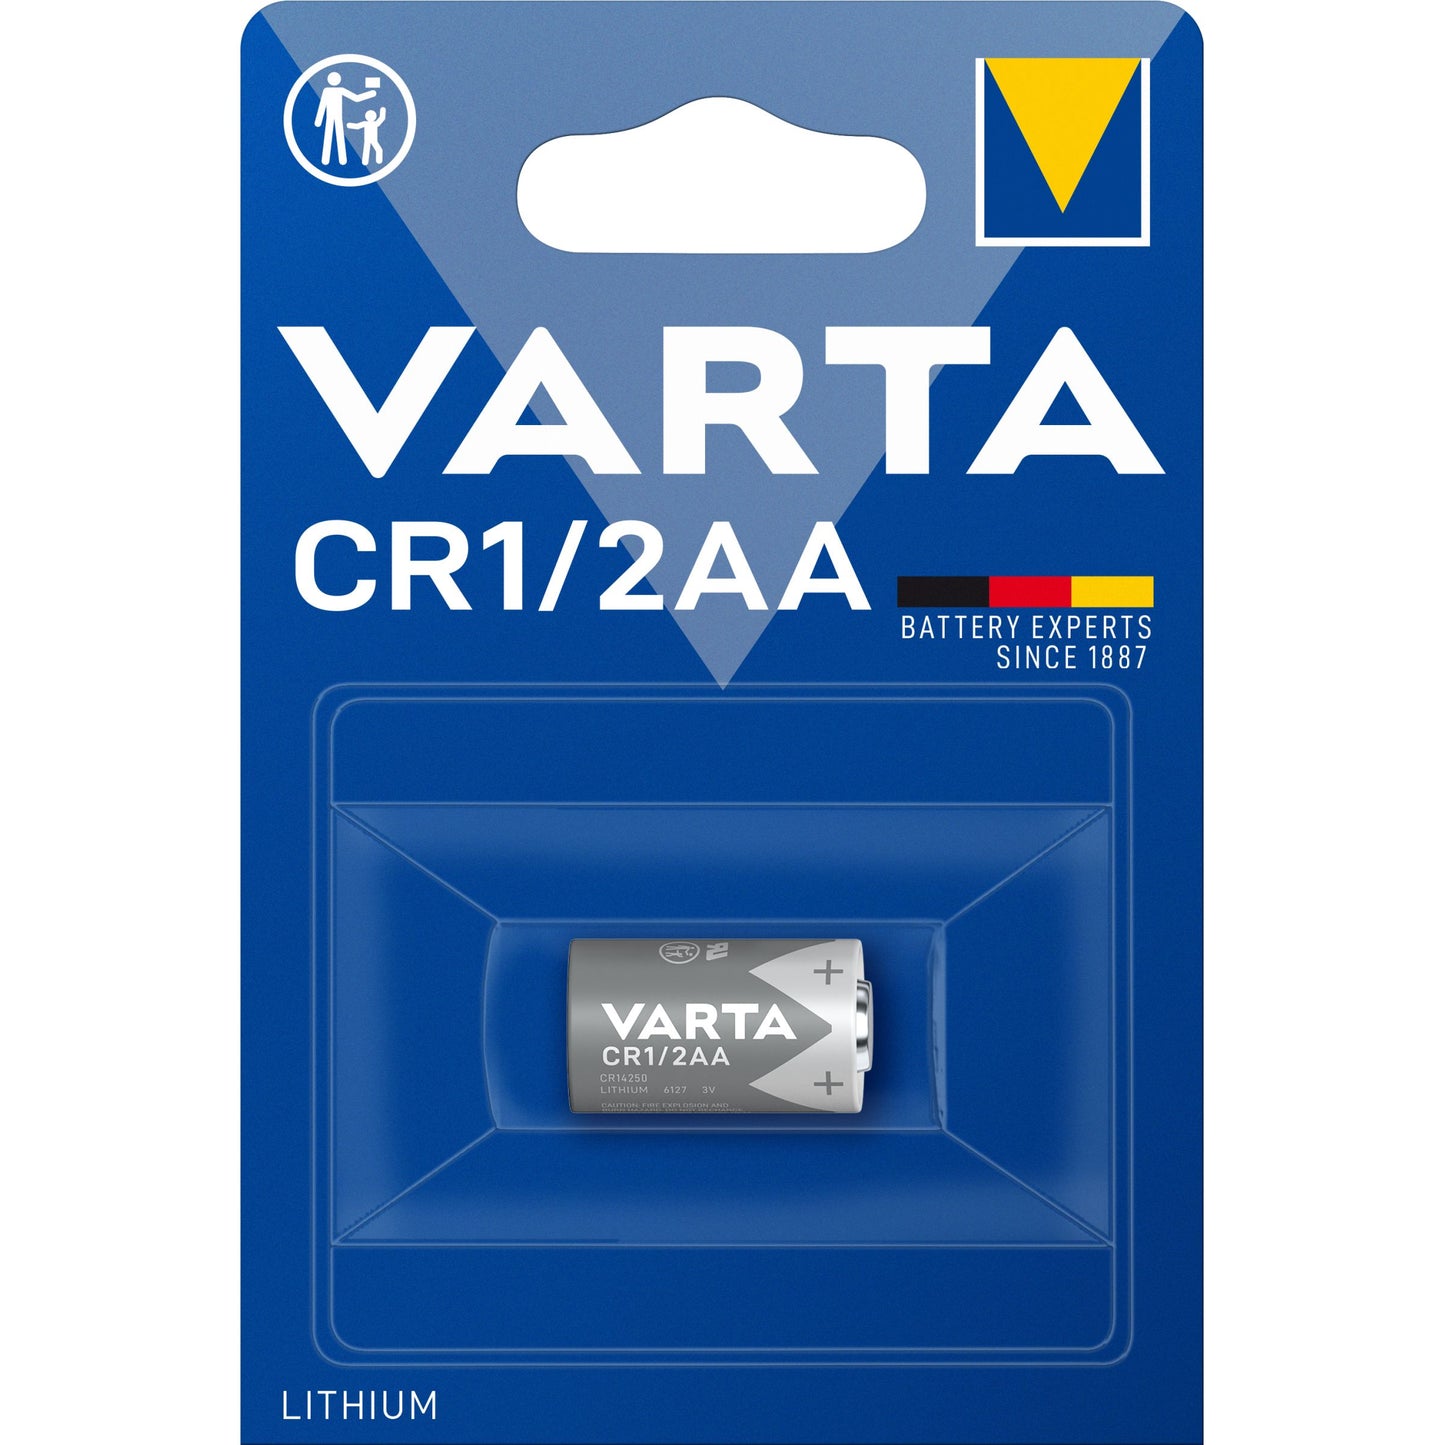 Varta CR1/2AA Battari